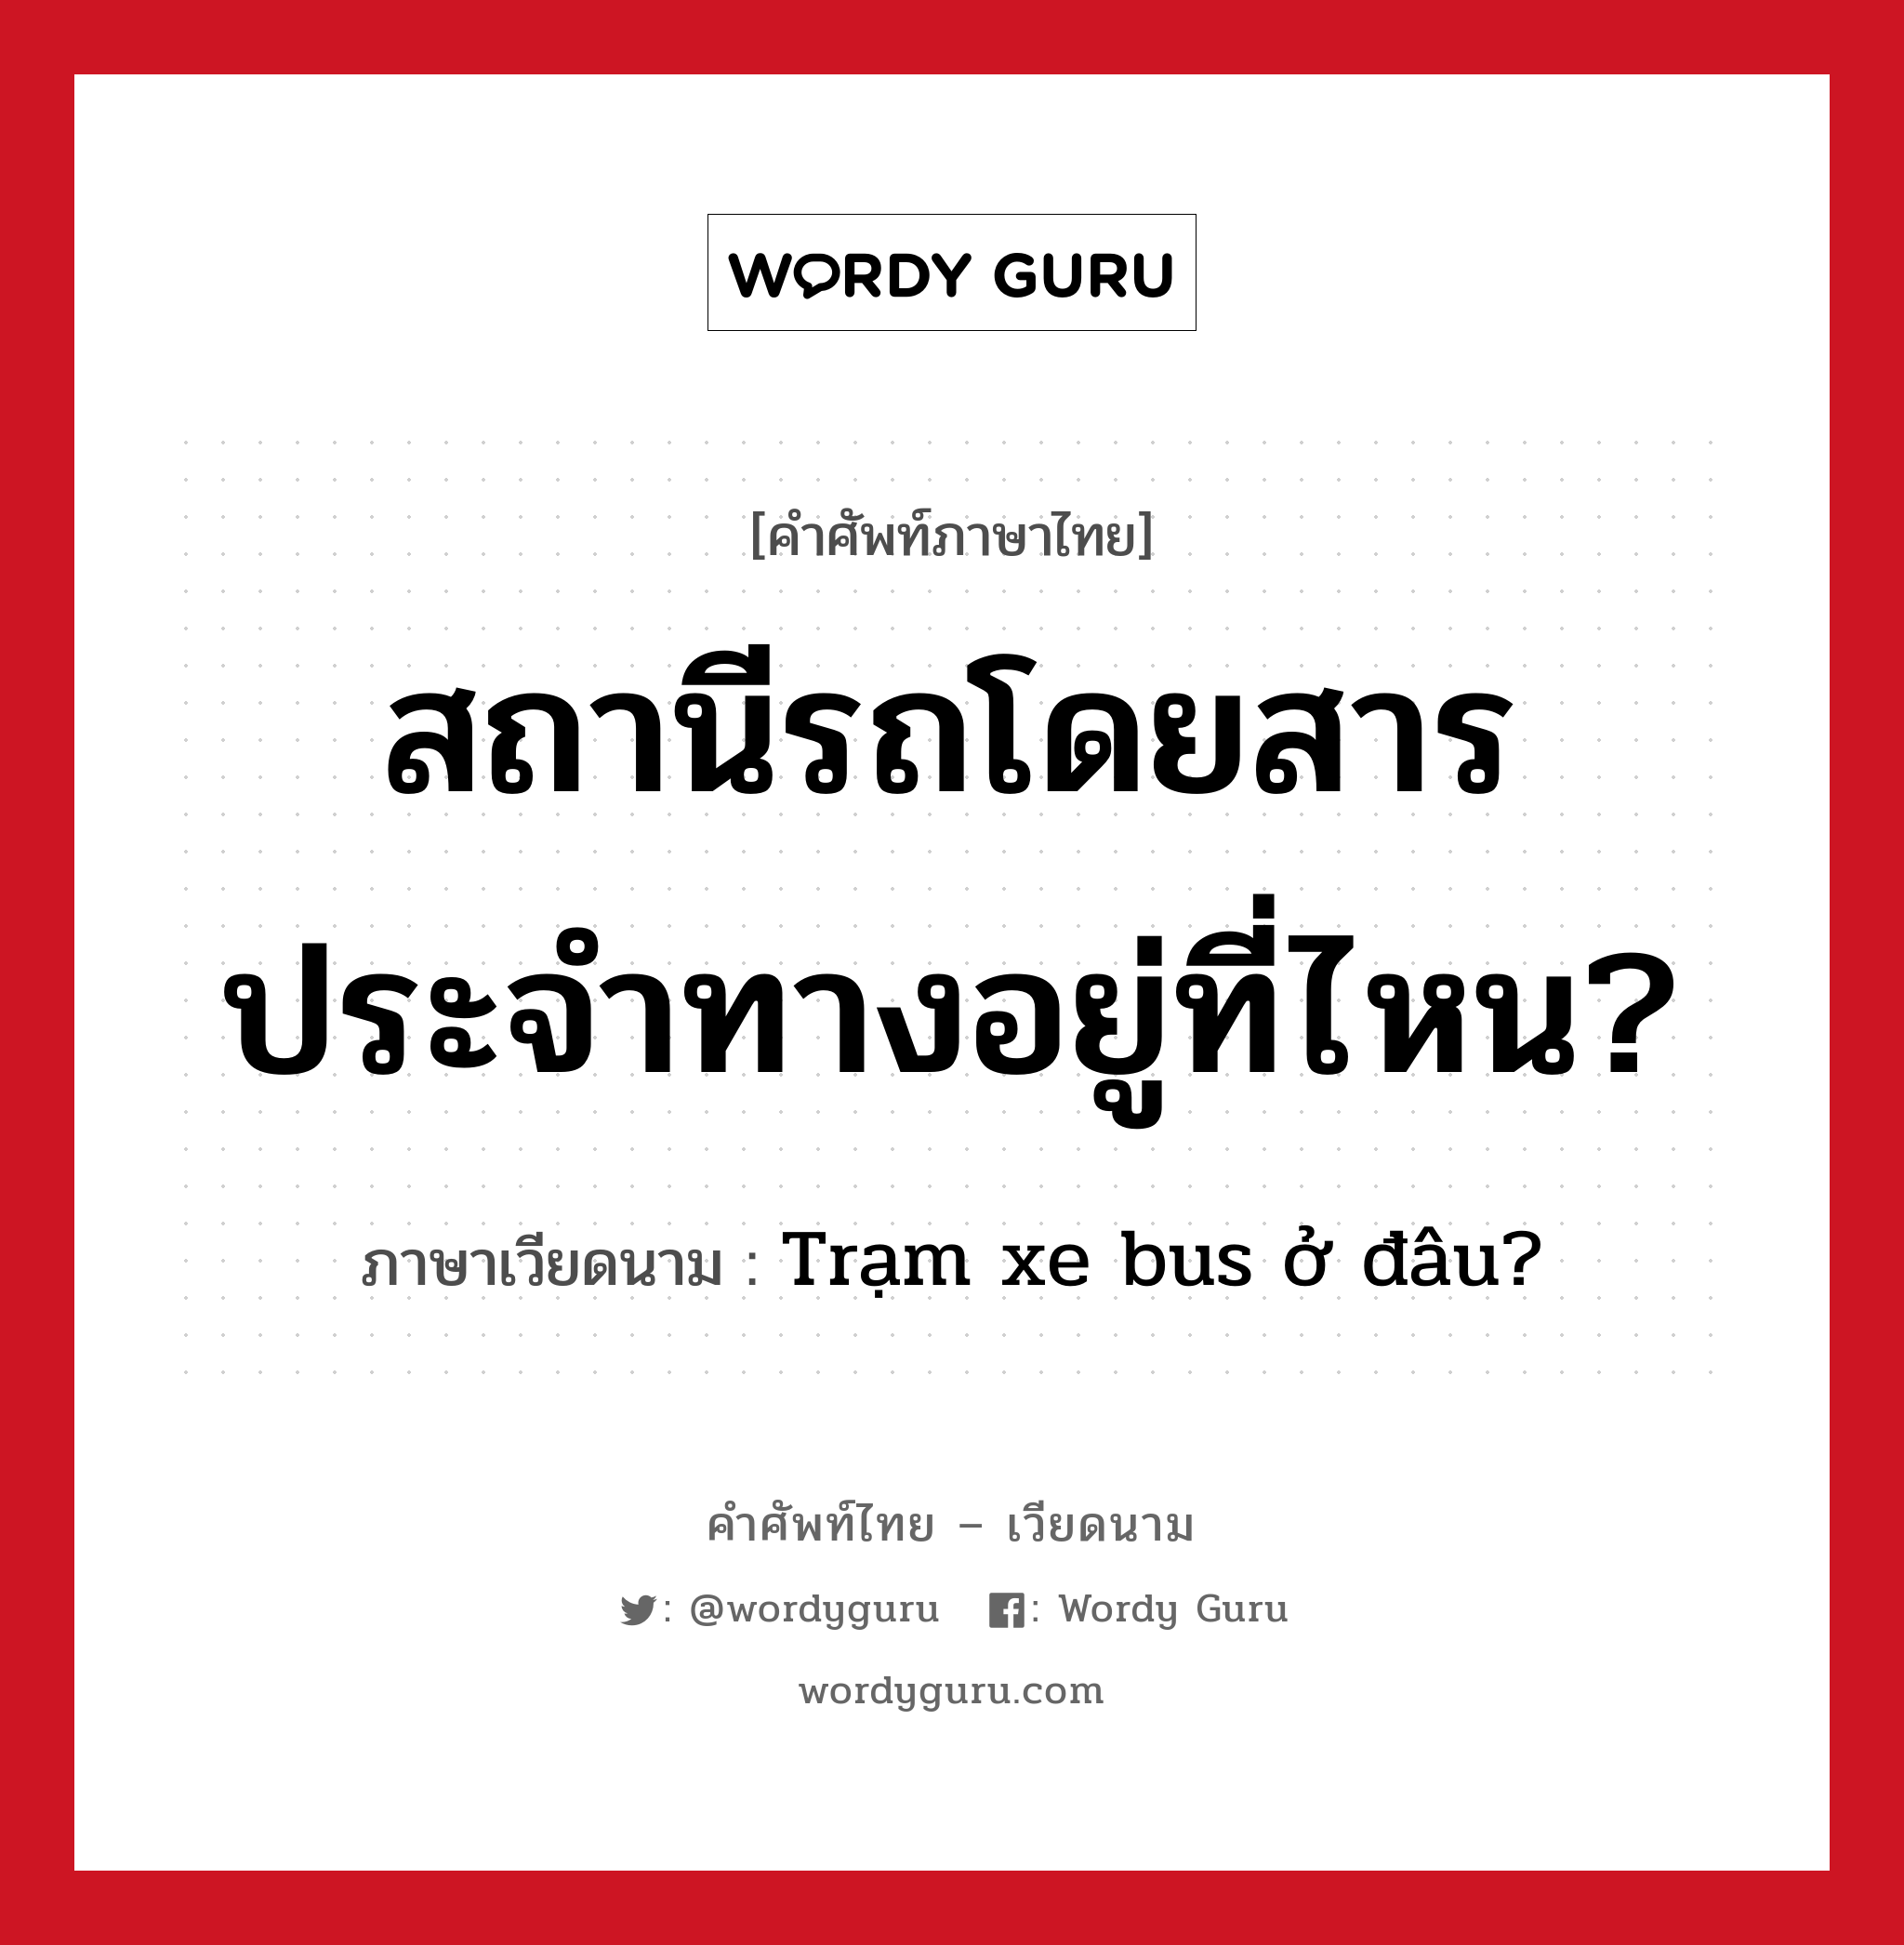 สถานีรถโดยสารประจำทางอยู่ที่ไหน? ภาษาเวียดนามคืออะไร, คำศัพท์ภาษาไทย - เวียดนาม สถานีรถโดยสารประจำทางอยู่ที่ไหน? ภาษาเวียดนาม Trạm xe bus ở đâu? หมวด การเดินทาง หมวด การเดินทาง